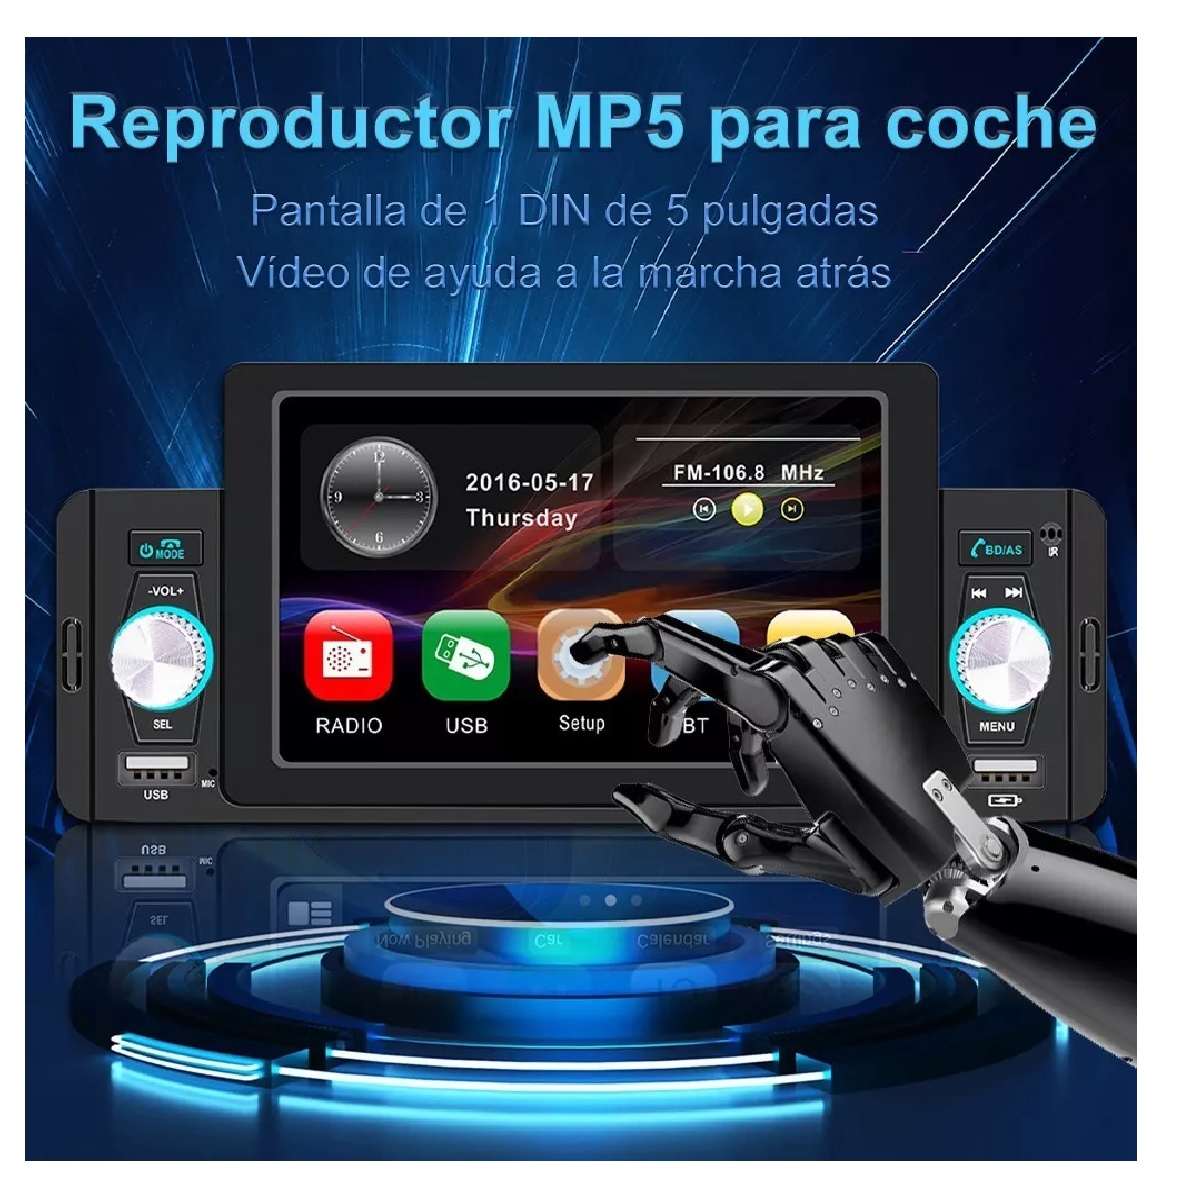 Convierte tu radio del coche en un sistema 'bluetooth', reproductor MP3 y  manos libres con solo un aparato